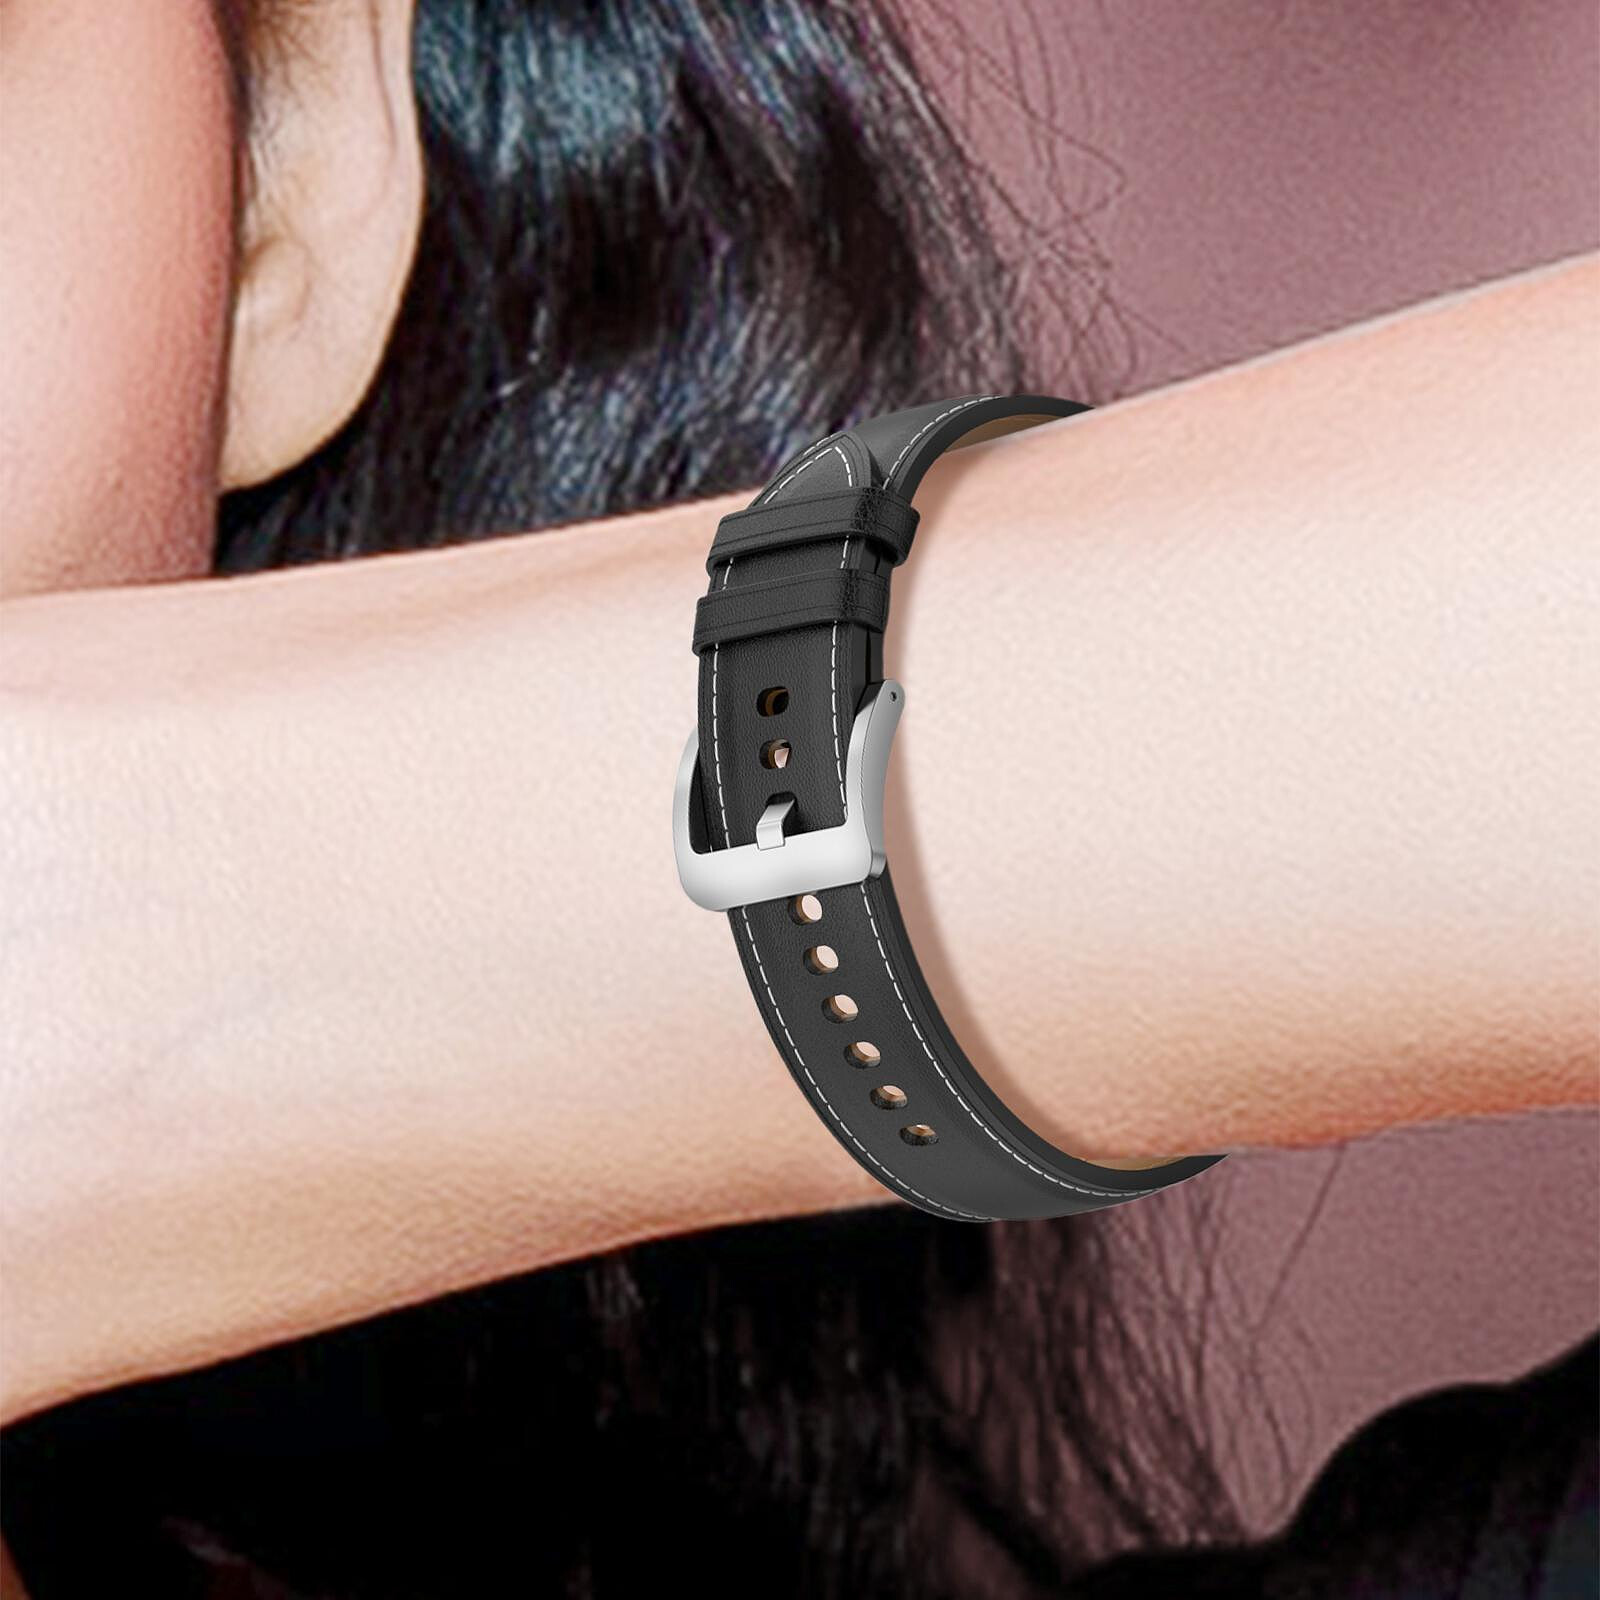 Bracelet en cuir pour montre, Apple Watch et Samsung smartwatch